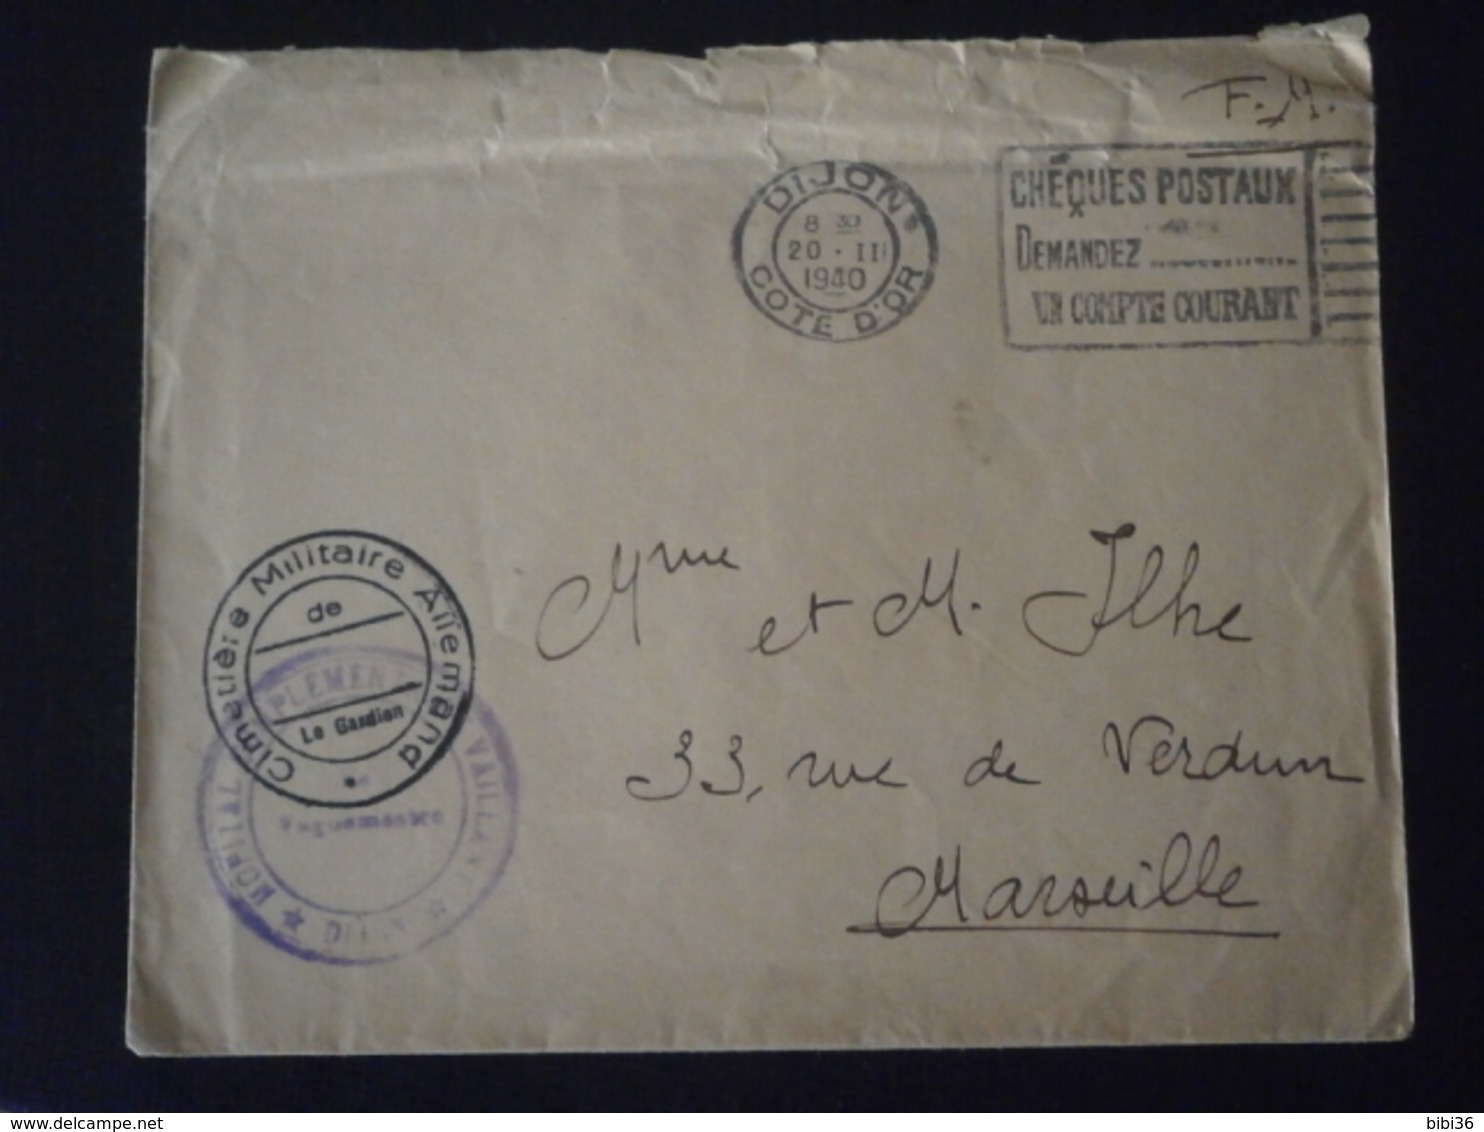 FRANCE FM FRANCHISE ENVELOPPE LETTRE COURRIER PLI GUERRE CIMETIERE MILITAIRE ALLEMAND HOPITAL VAILLANT DIJON COTE OR - Guerre De 1939-45